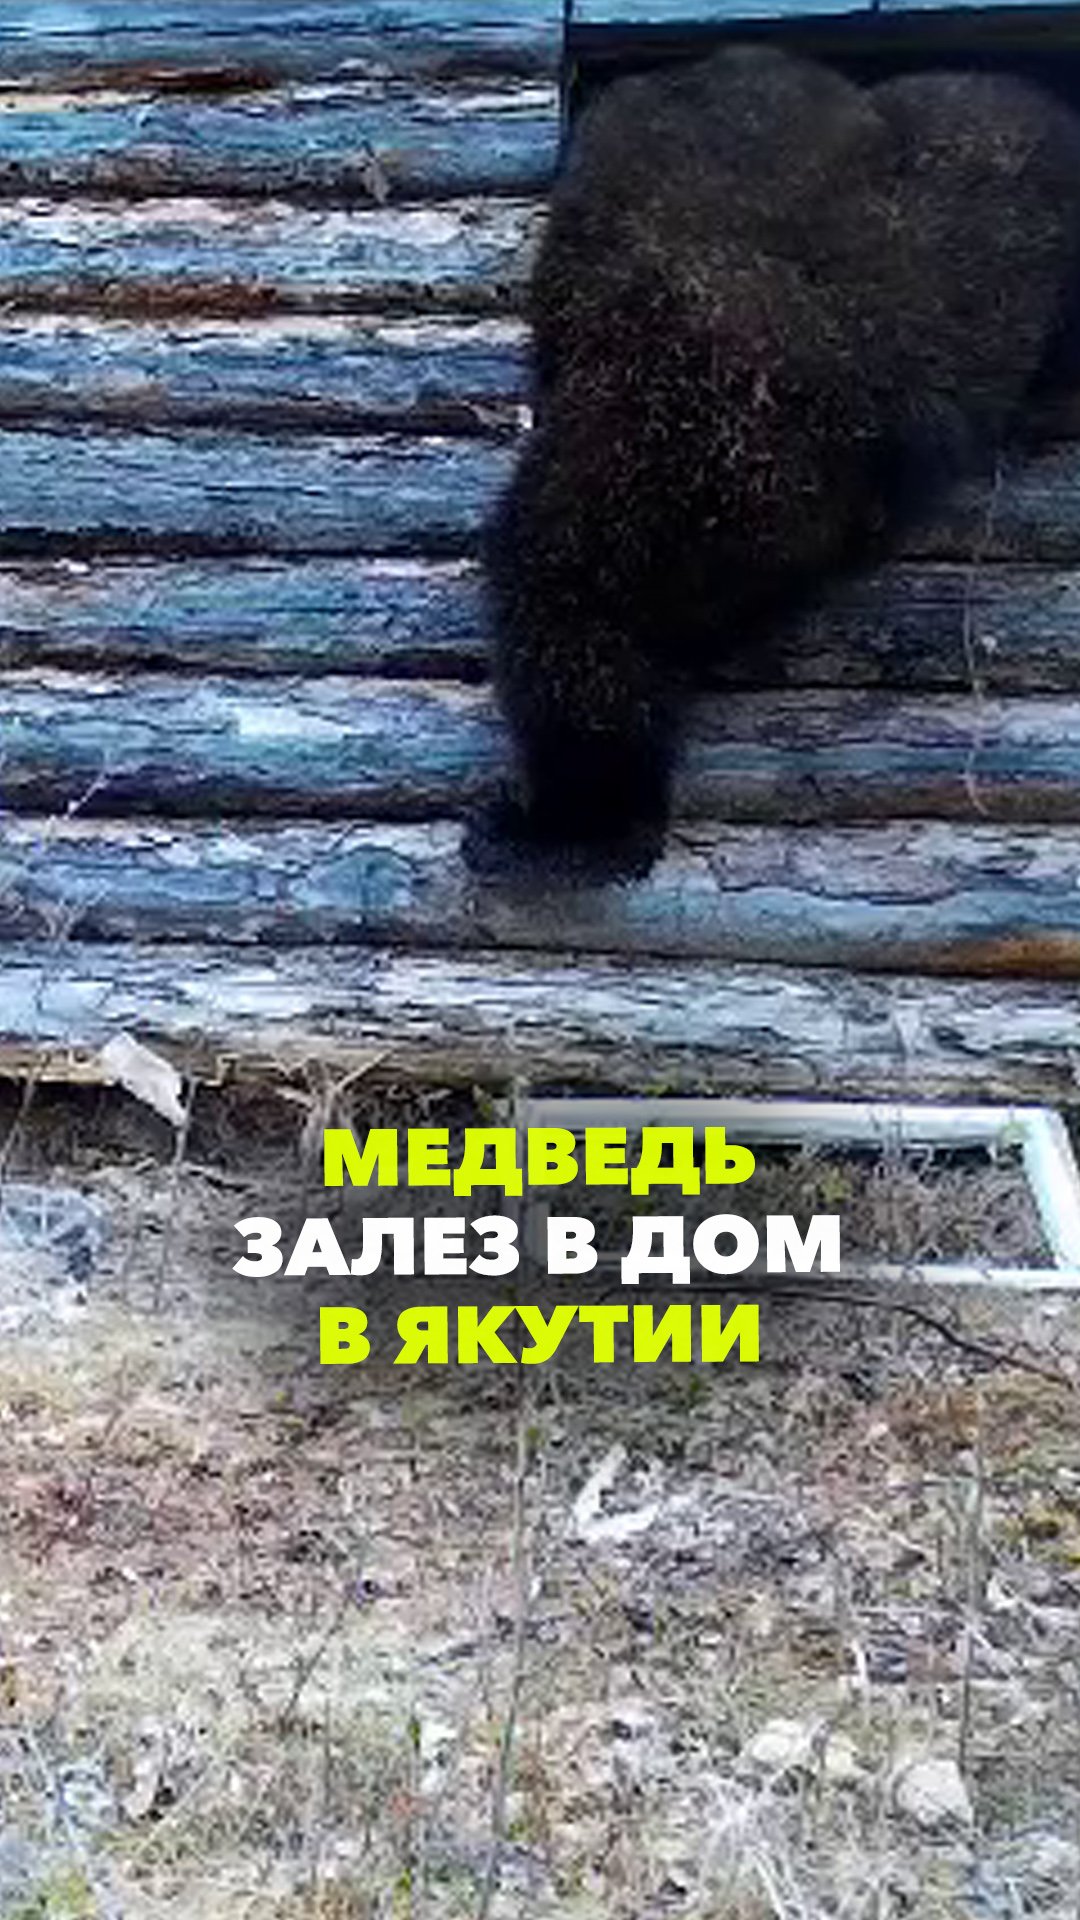 Медведь-вандал залез в дом лесника в Якутии - выломал окно